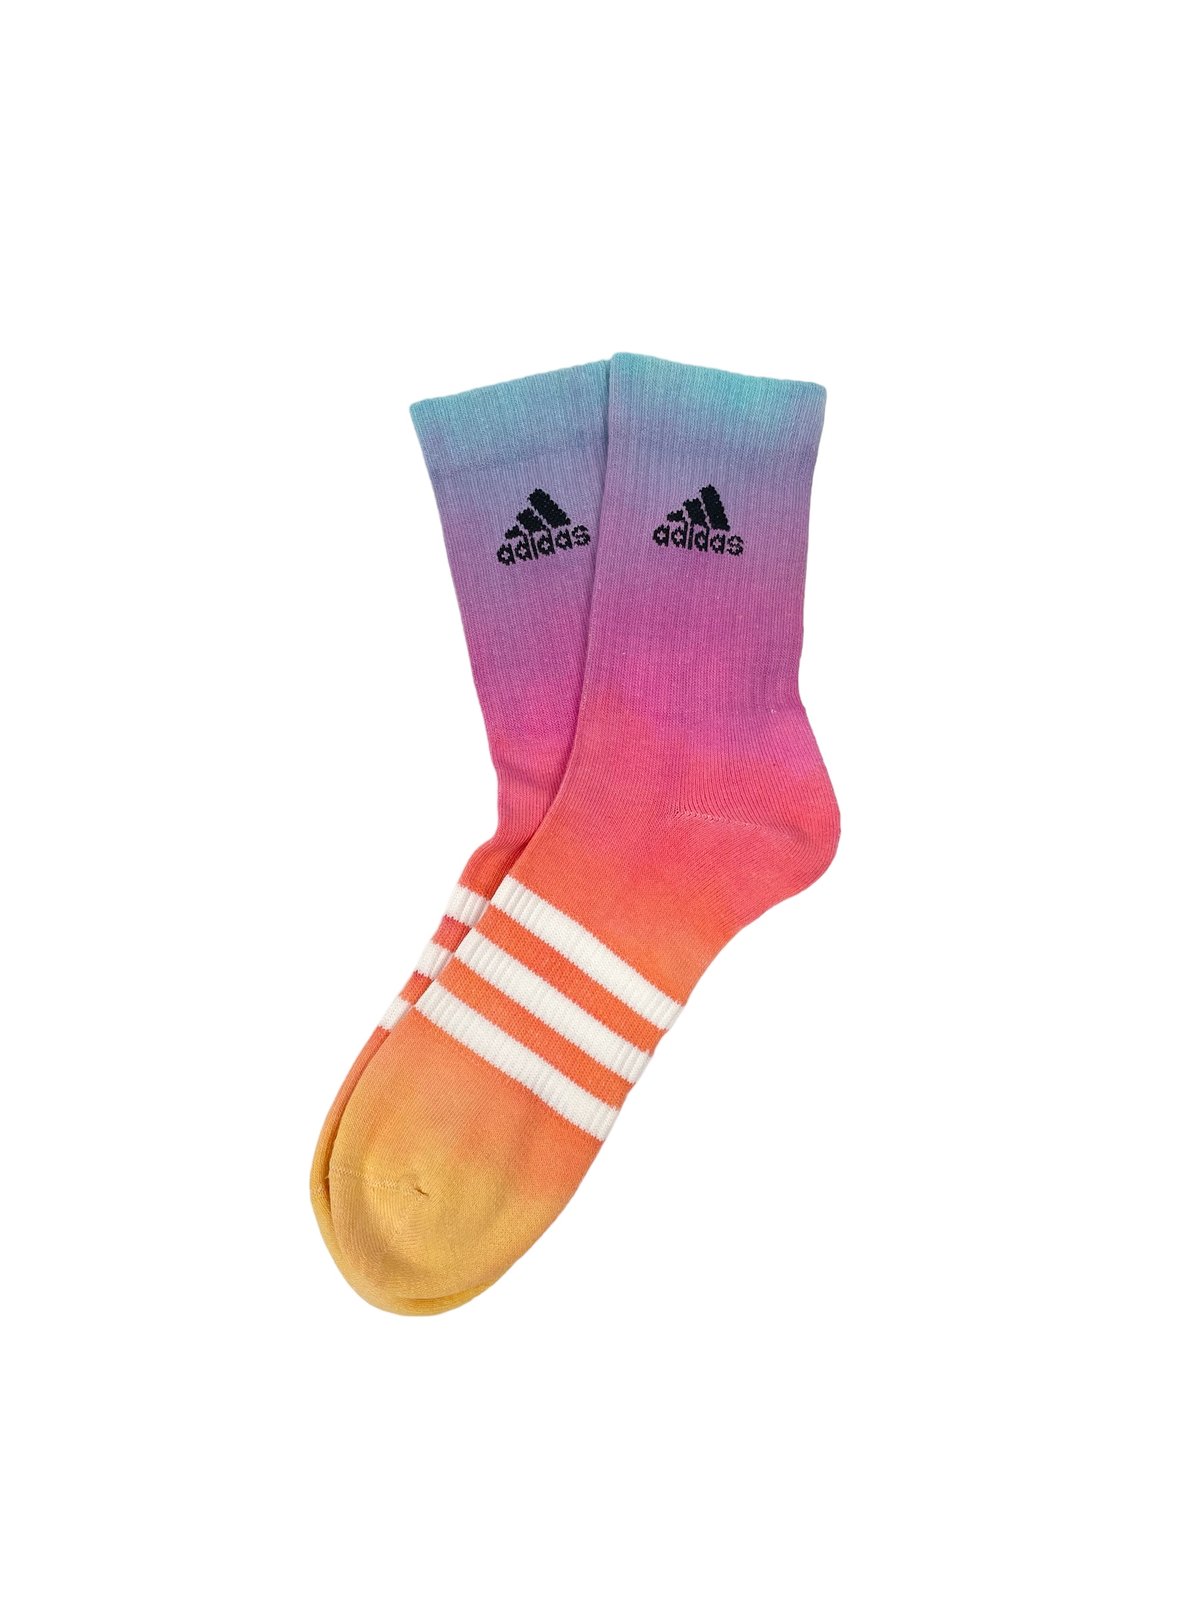 Image of Adidas Socks Dyed Sunset Reverse